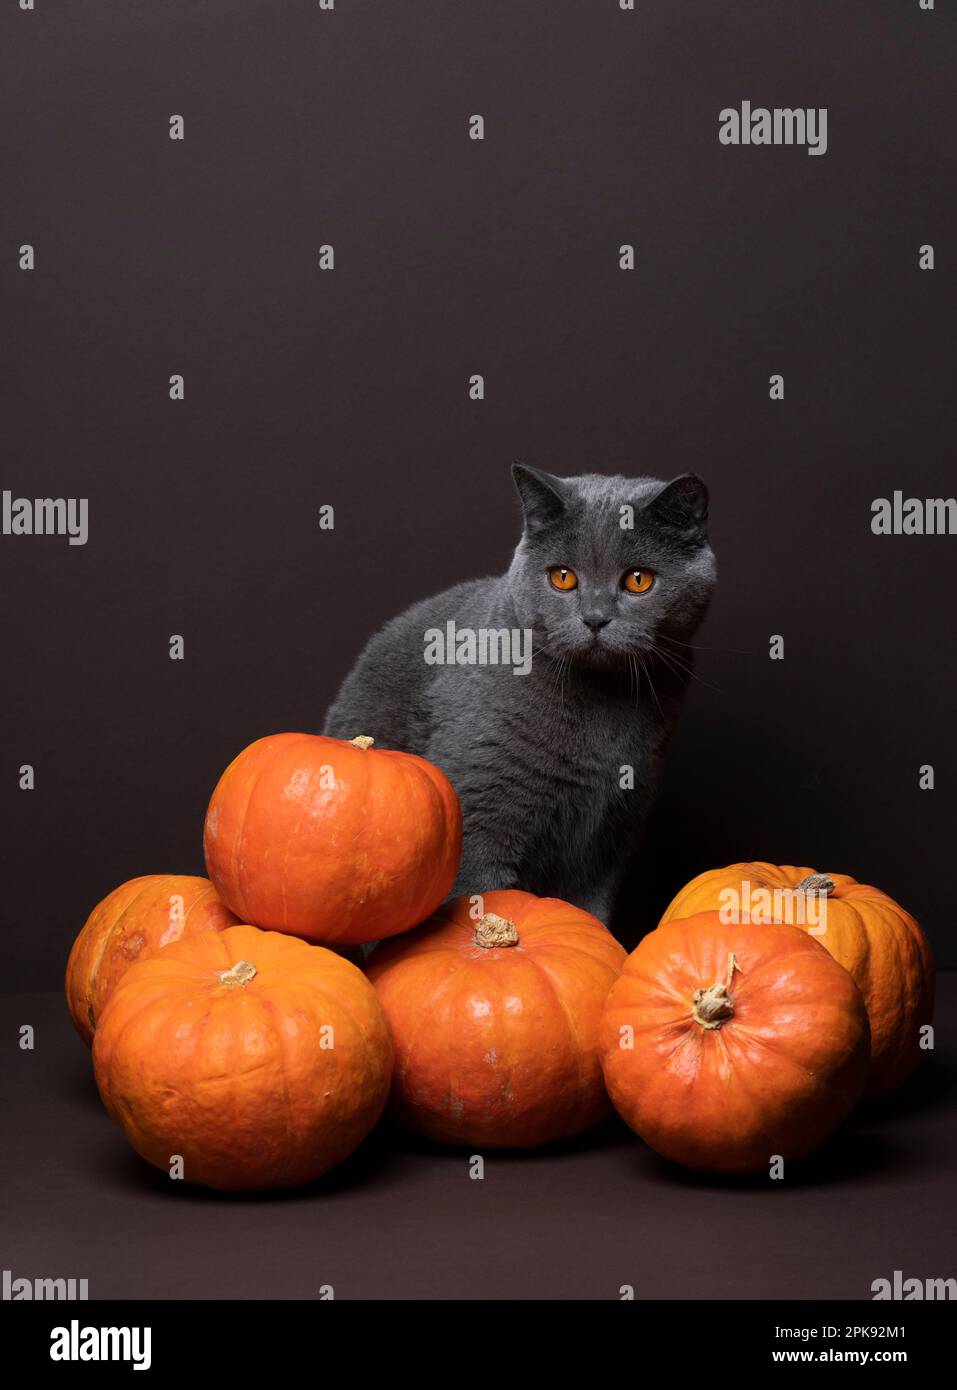 chat de shorthair britannique gris avec des yeux orange assis derrière un bouquet de citrouilles. Studio tourné sur fond marron avec espace de copie Banque D'Images